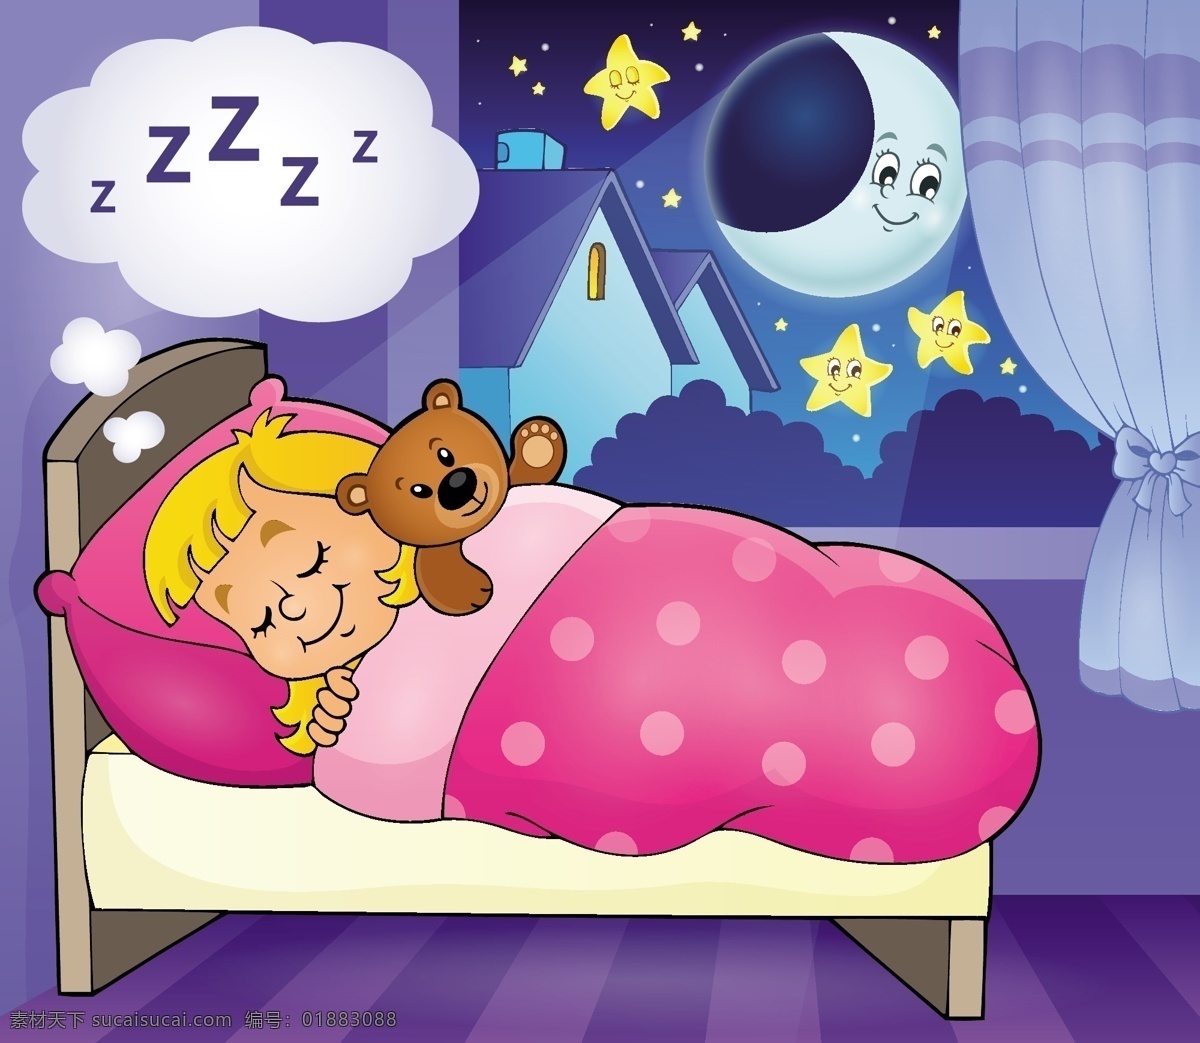 女孩子 睡梦 孩子 月亮 矢量 粉色 睡梦中 被窝里 房间 室内 梦幻 童话 在月亮上 对话框 夜晚 月球 卡通 插画 星空